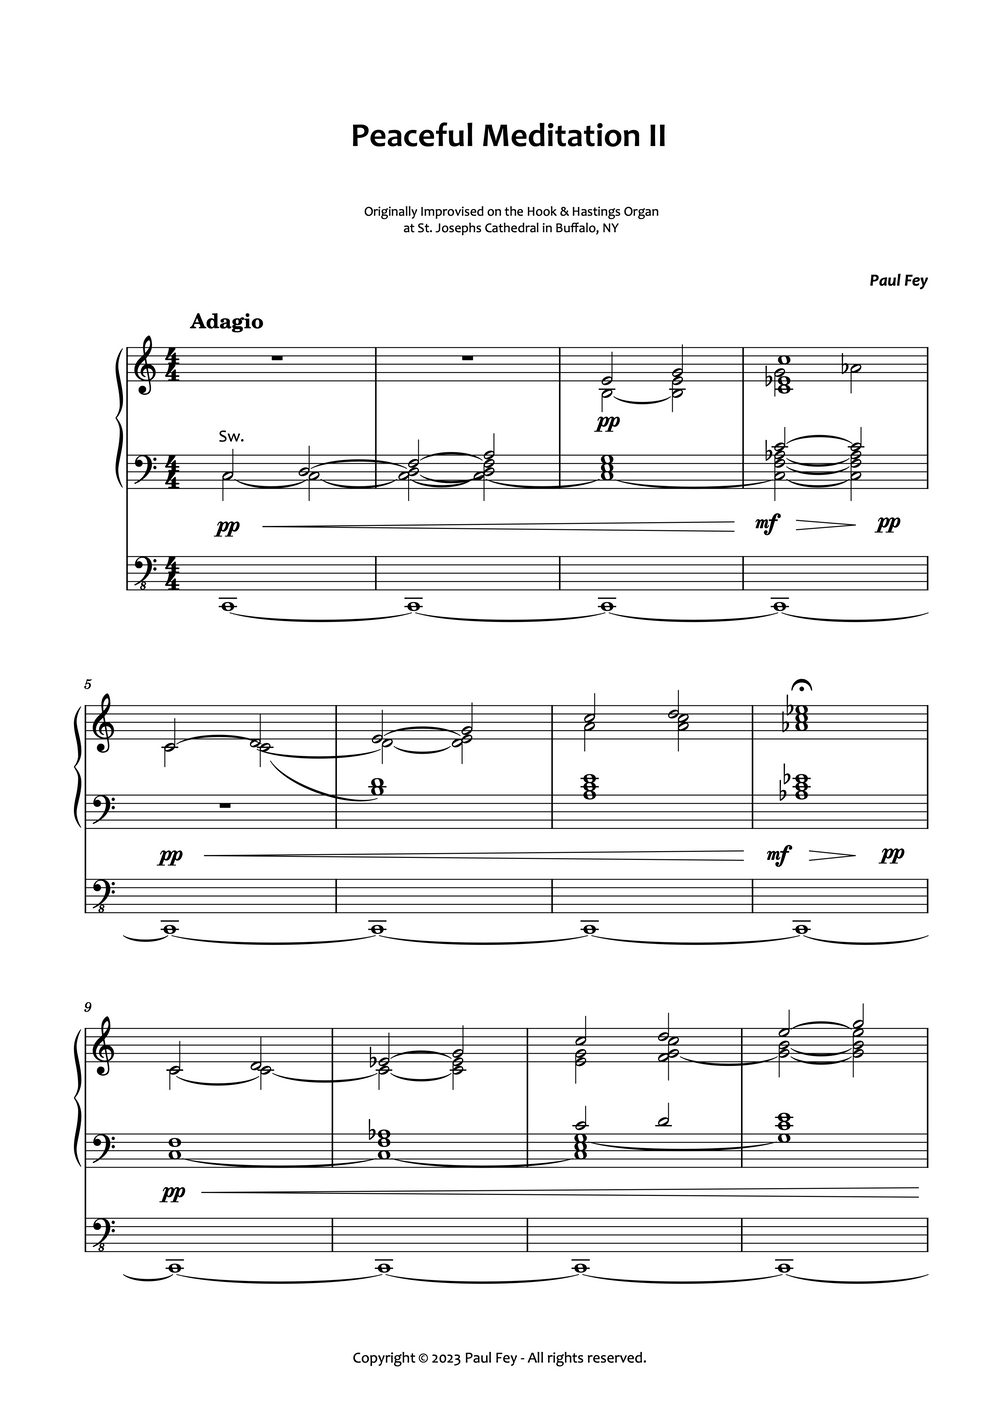 Peaceful Meditation II for Organ (Sheet Music) - Music for Organ by Paul Fey Organist